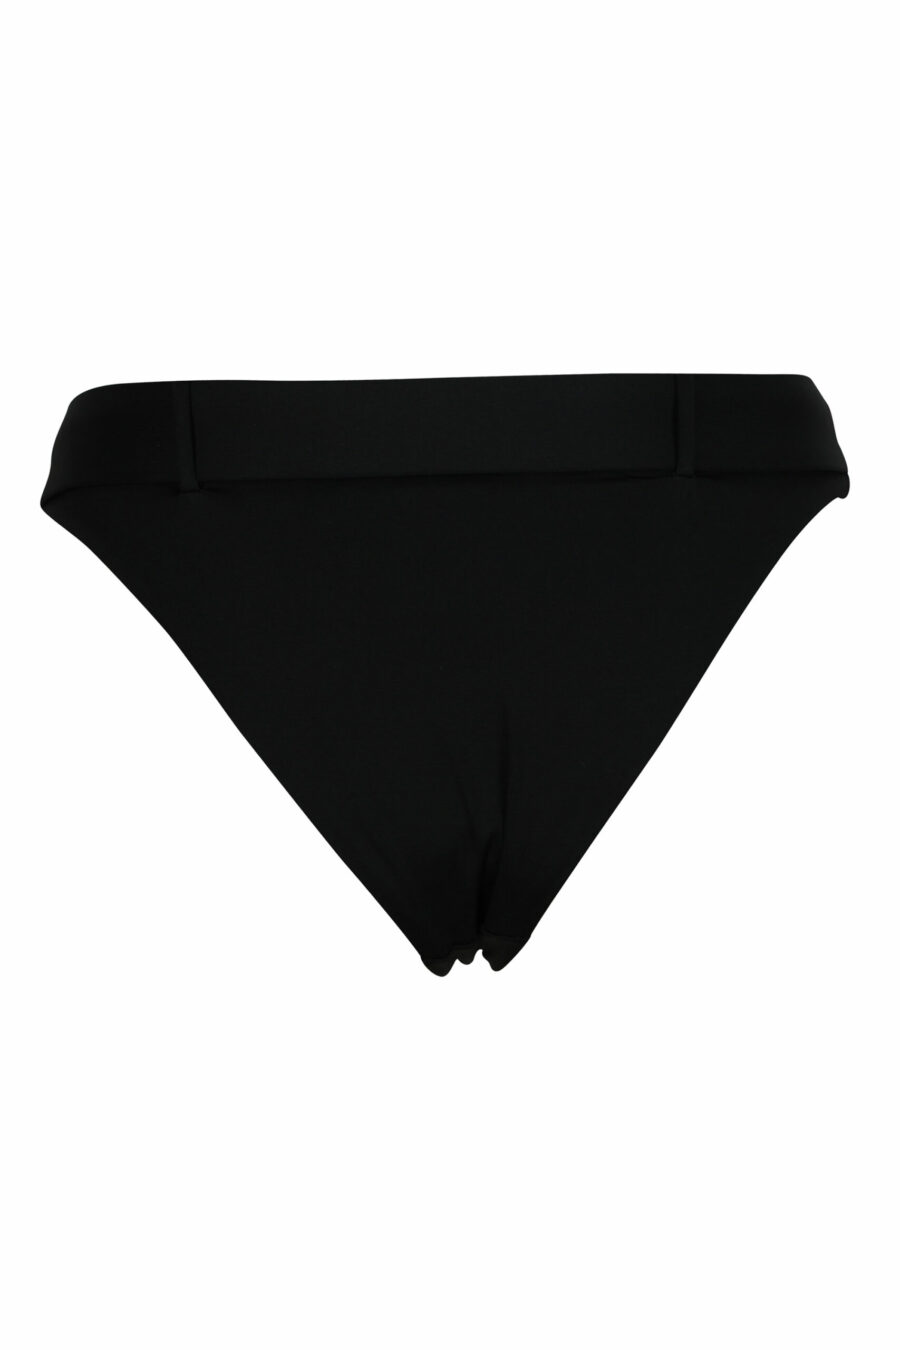 Schwarzes Bikinihöschen mit Gürtelschnalle - 667113654980 1 skaliert